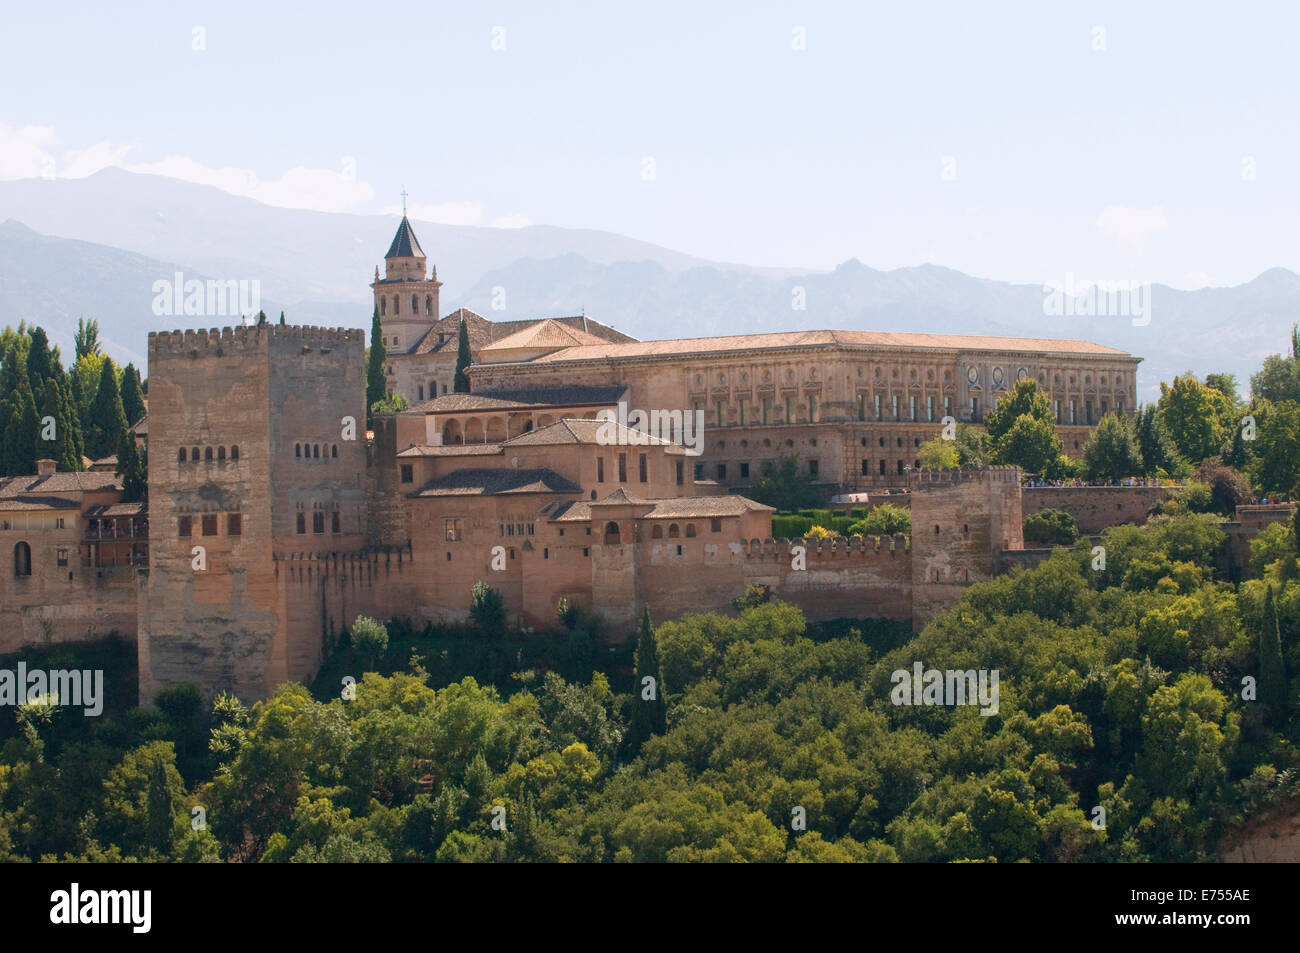 Alhambra spain